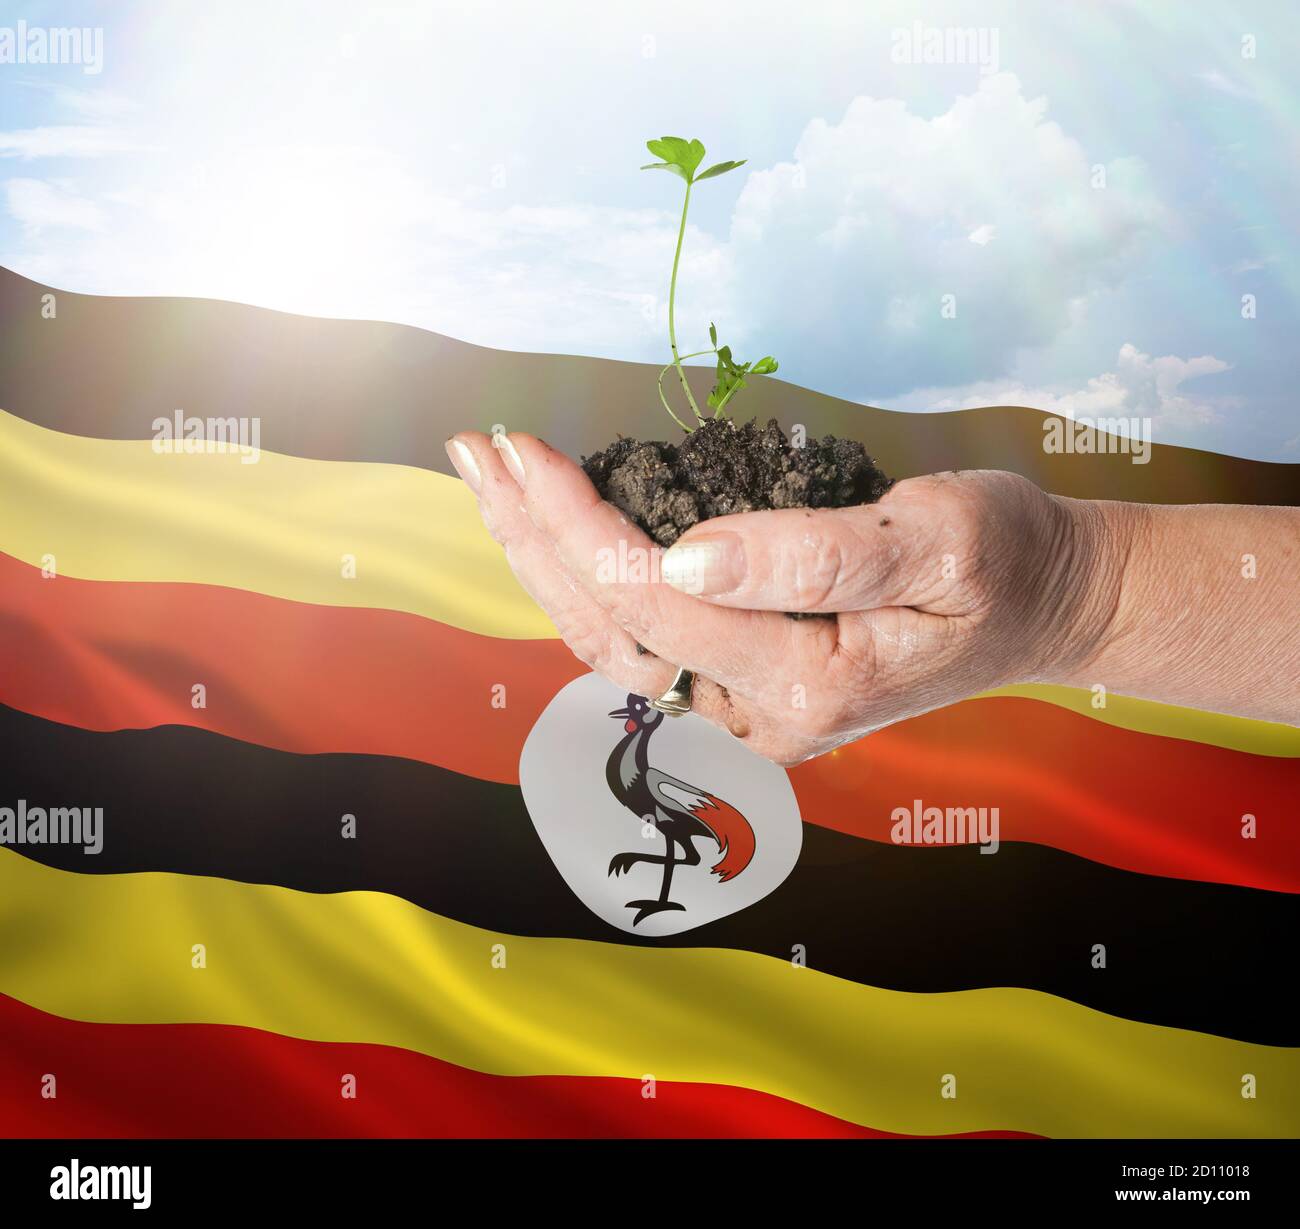 Crecimiento de Uganda y nuevo comienzo. Concepto de energía renovable verde y ecología. Mano sosteniendo planta joven. Foto de stock